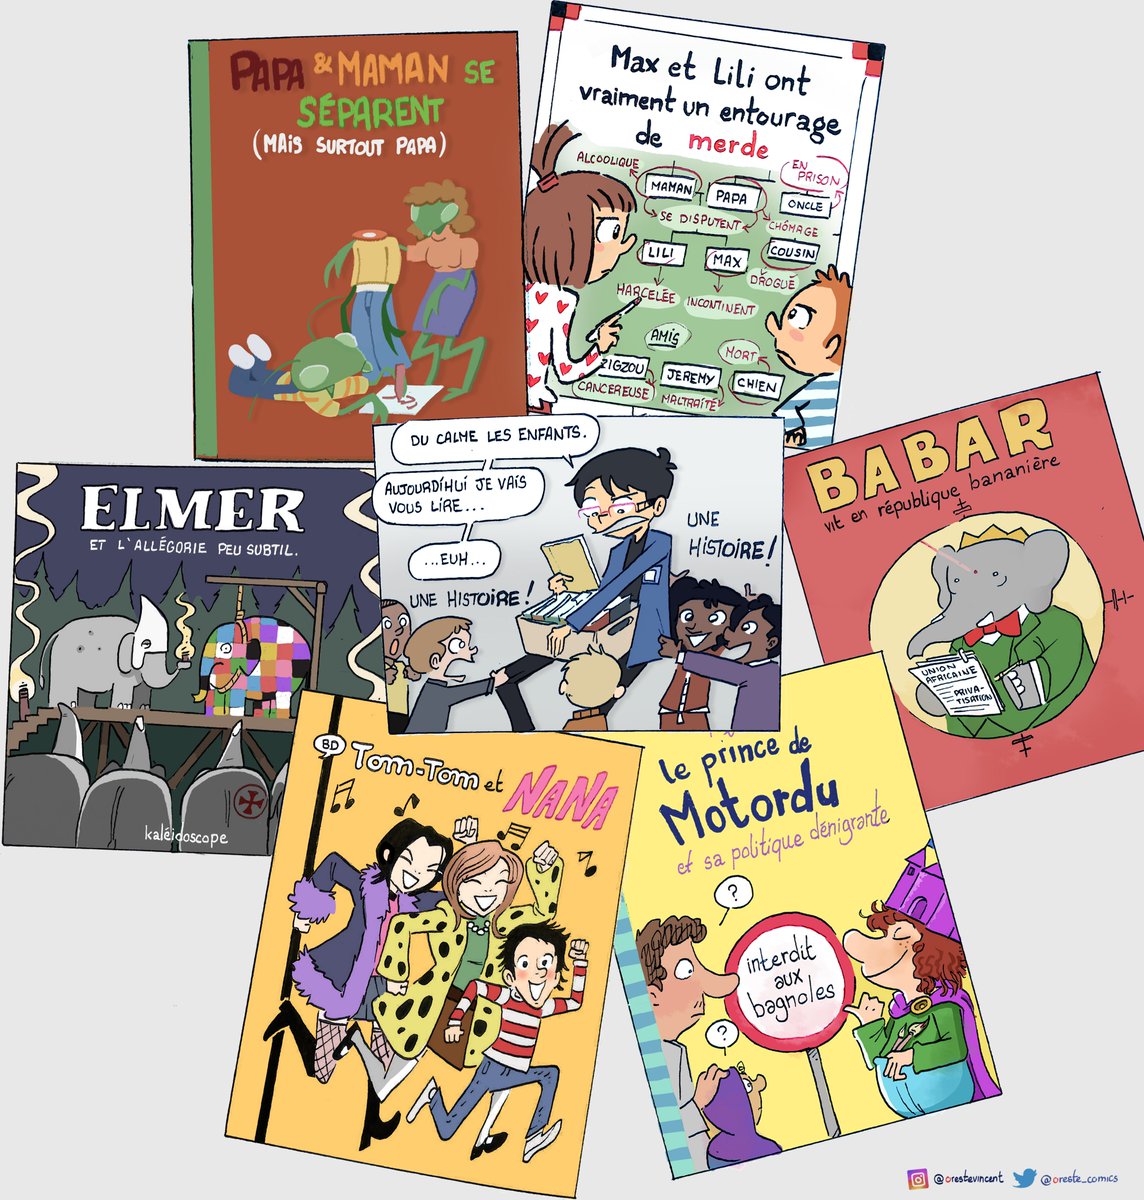 10. Mon stage en médiathèque

L'occasion de faire découvrir aux plus petits les classiques des livres pour enfants.

#webcomic #parodie #maxetlili #elmerelephant #tomtometnana #nana #babar #princedemotordu